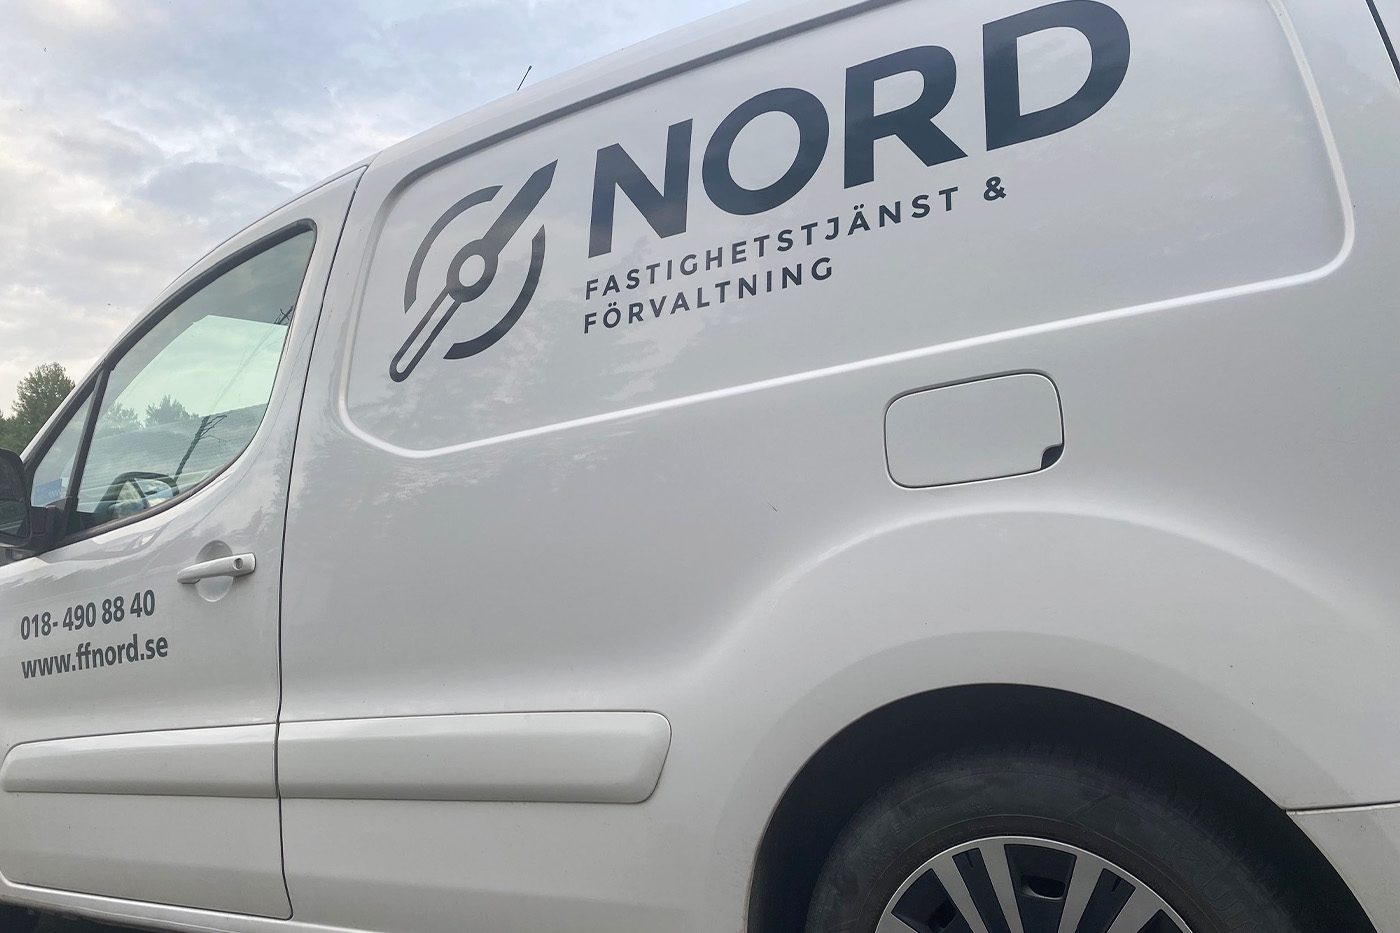 FF Nord utför fastighetsservice i Uppsala.